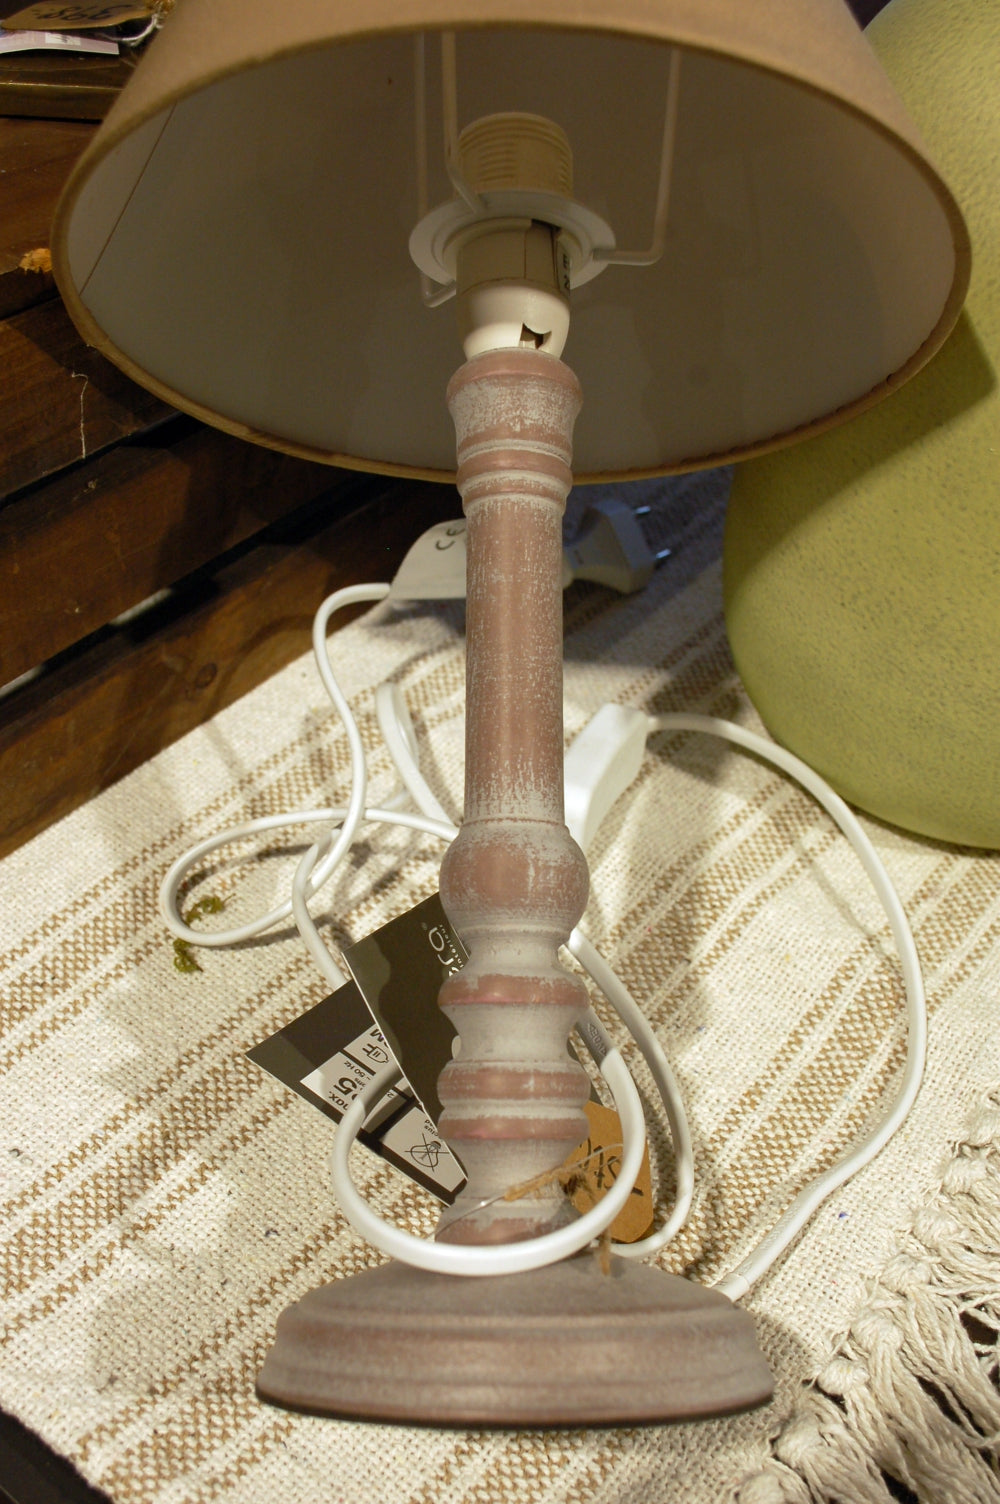 Fin lampa som passar t.ex. i den lantliga sovrummet. Skärm ingår.  Material: Polyester/furu/järn  Produktmått: diameter 20 x höjd 36 cm  Skärm: diameter 19,8 x höjd 13,1 cm  Sladdlängd: 150 cm  Strömförsörjning (nät/batteri/USB-anslutning): nät  Glödlampa ingår: NEJ  Sockel: E14  Max effekt: 25W